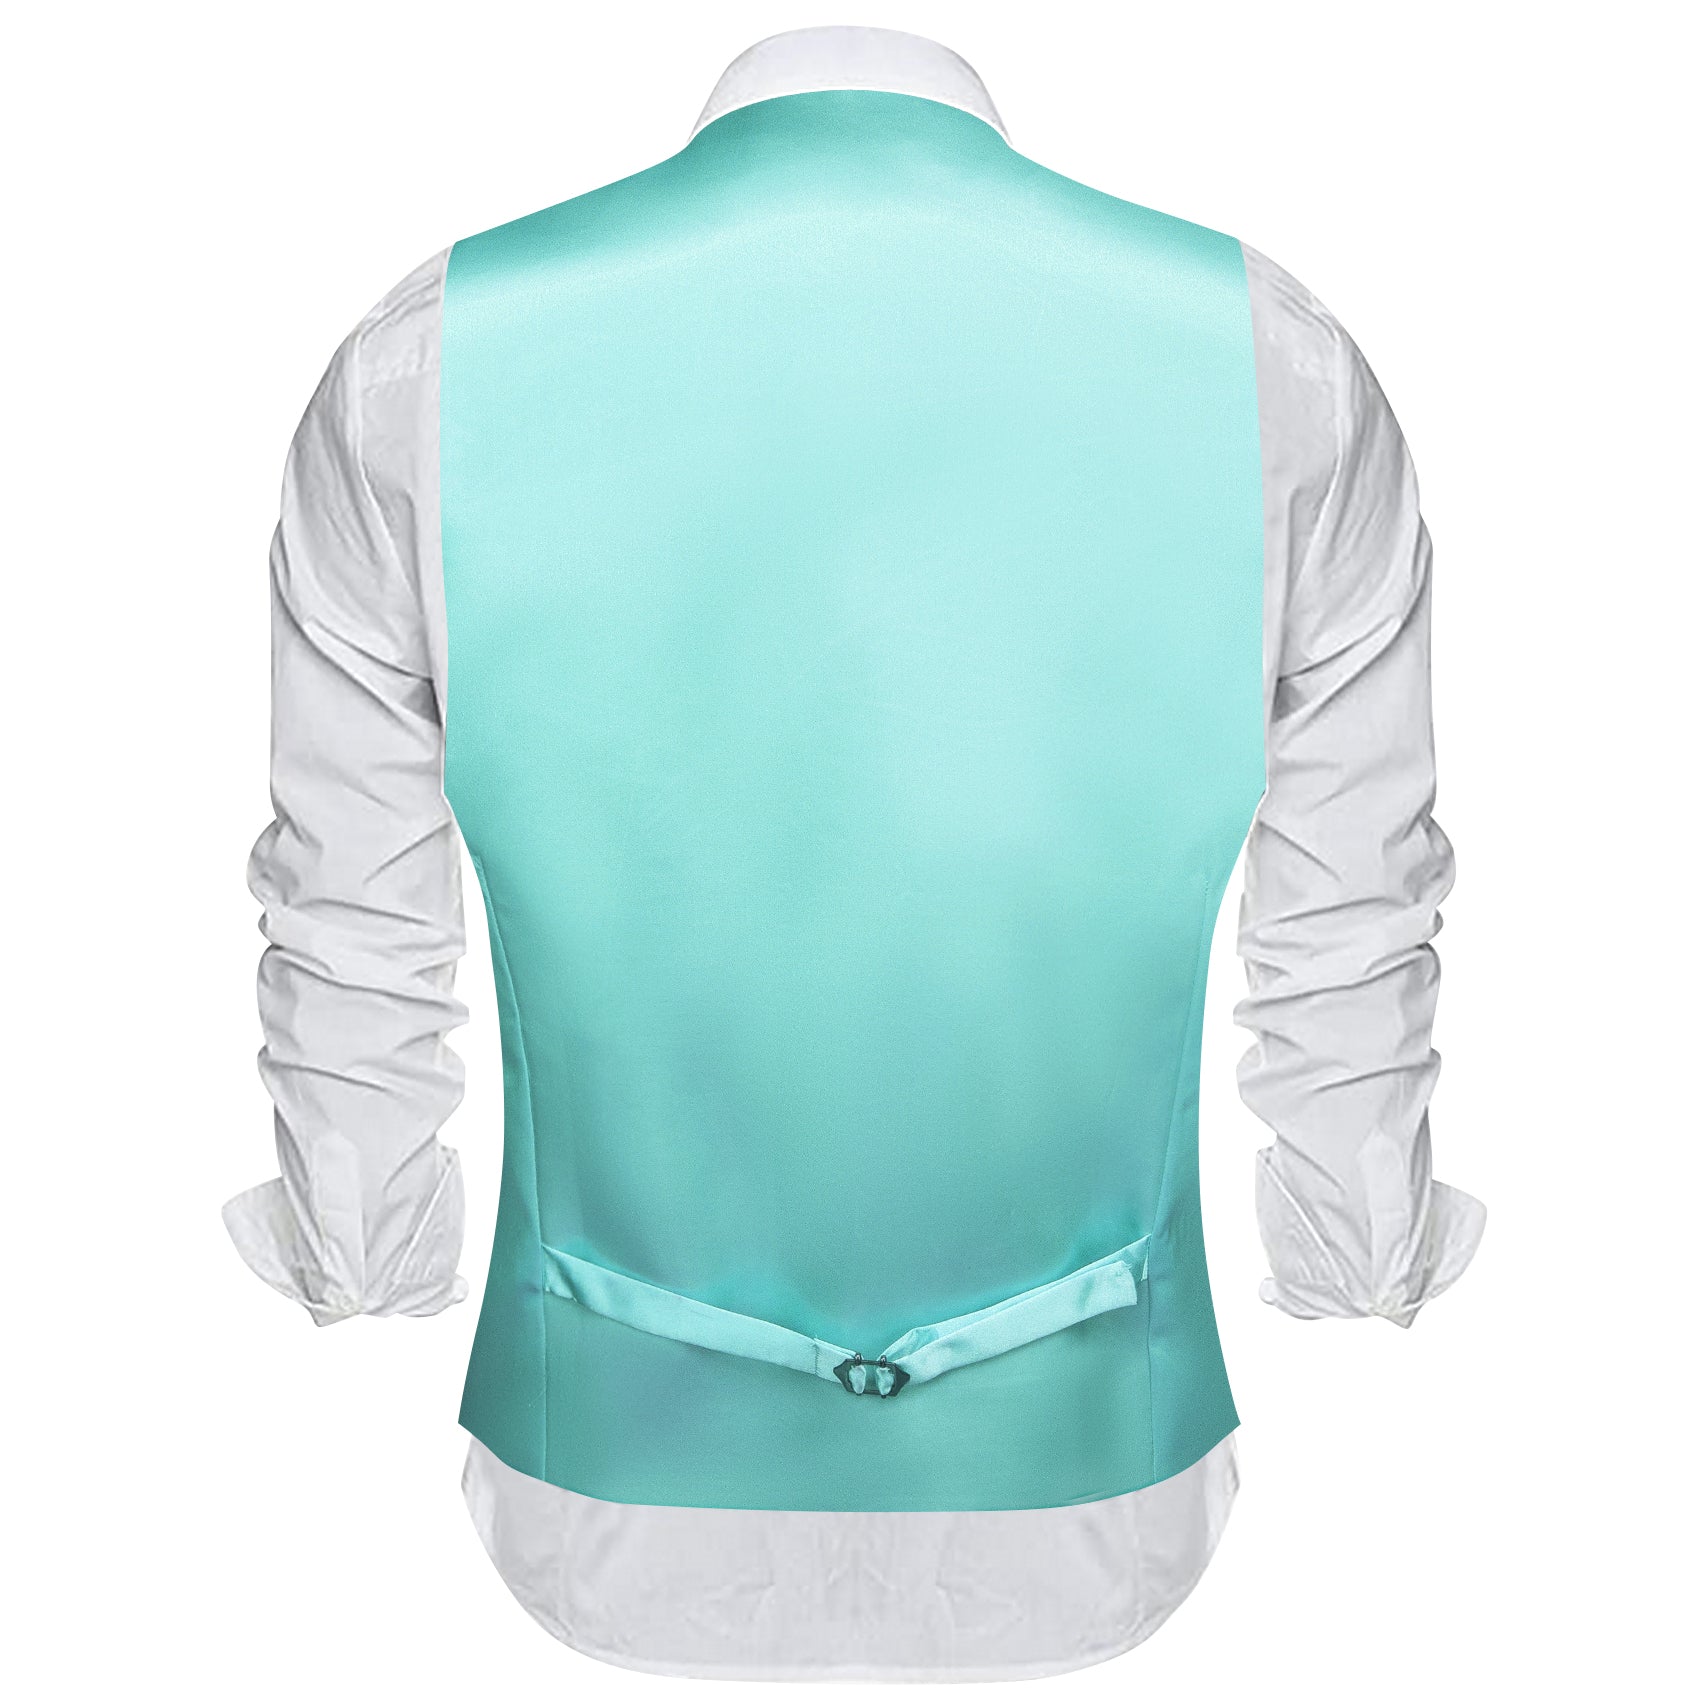 Aqua Solid Silk Waistcoat Vest for Party